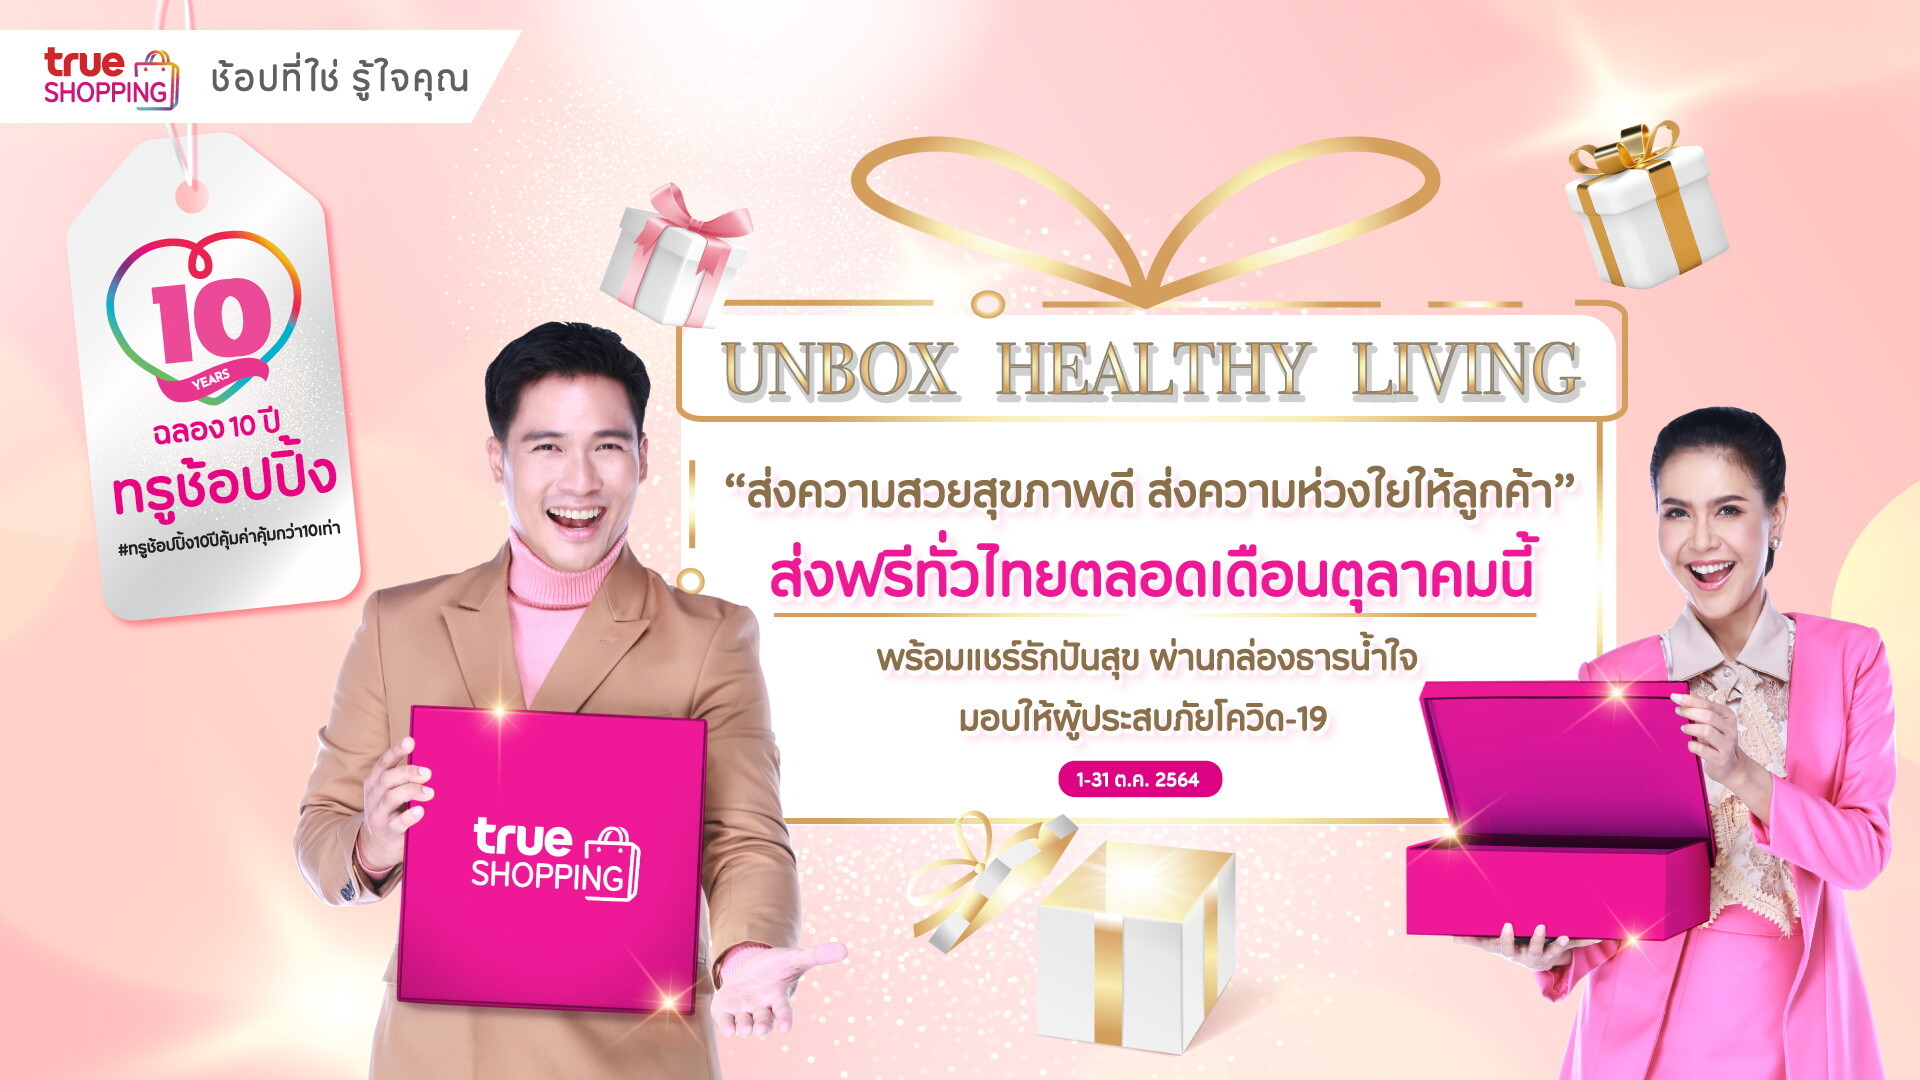 ฉลองครบรอบ 10 ปี ทรูช้อปปิ้ง...โฮมช้อปปิ้งชั้นนำของไทย ชูคอนเซ็ปต์ "UNBOX HEALTHY LIVING ส่งความสวยสุขภาพดี ส่งความห่วงใยให้ลูกค้า" เดลิเวอรี่ฟรีทั่วไทย ตลอดเดือนตุลาคมนี้